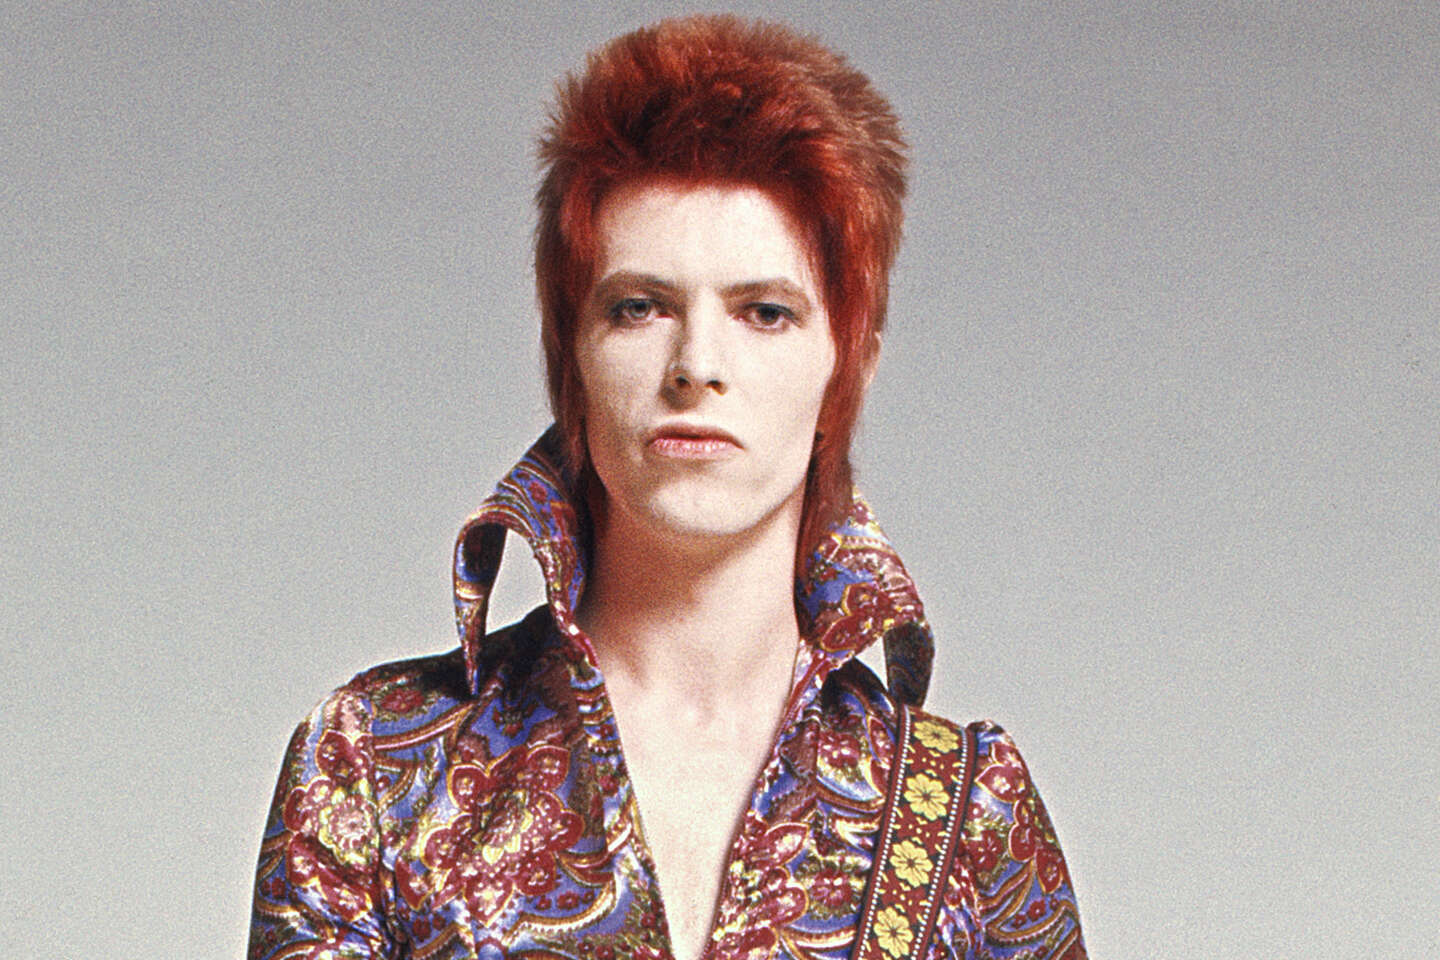 Regarder la vidéo « Rock’n’roll Star ! », la genèse de « Ziggy Stardust », qui mena David Bowie à la célébrité